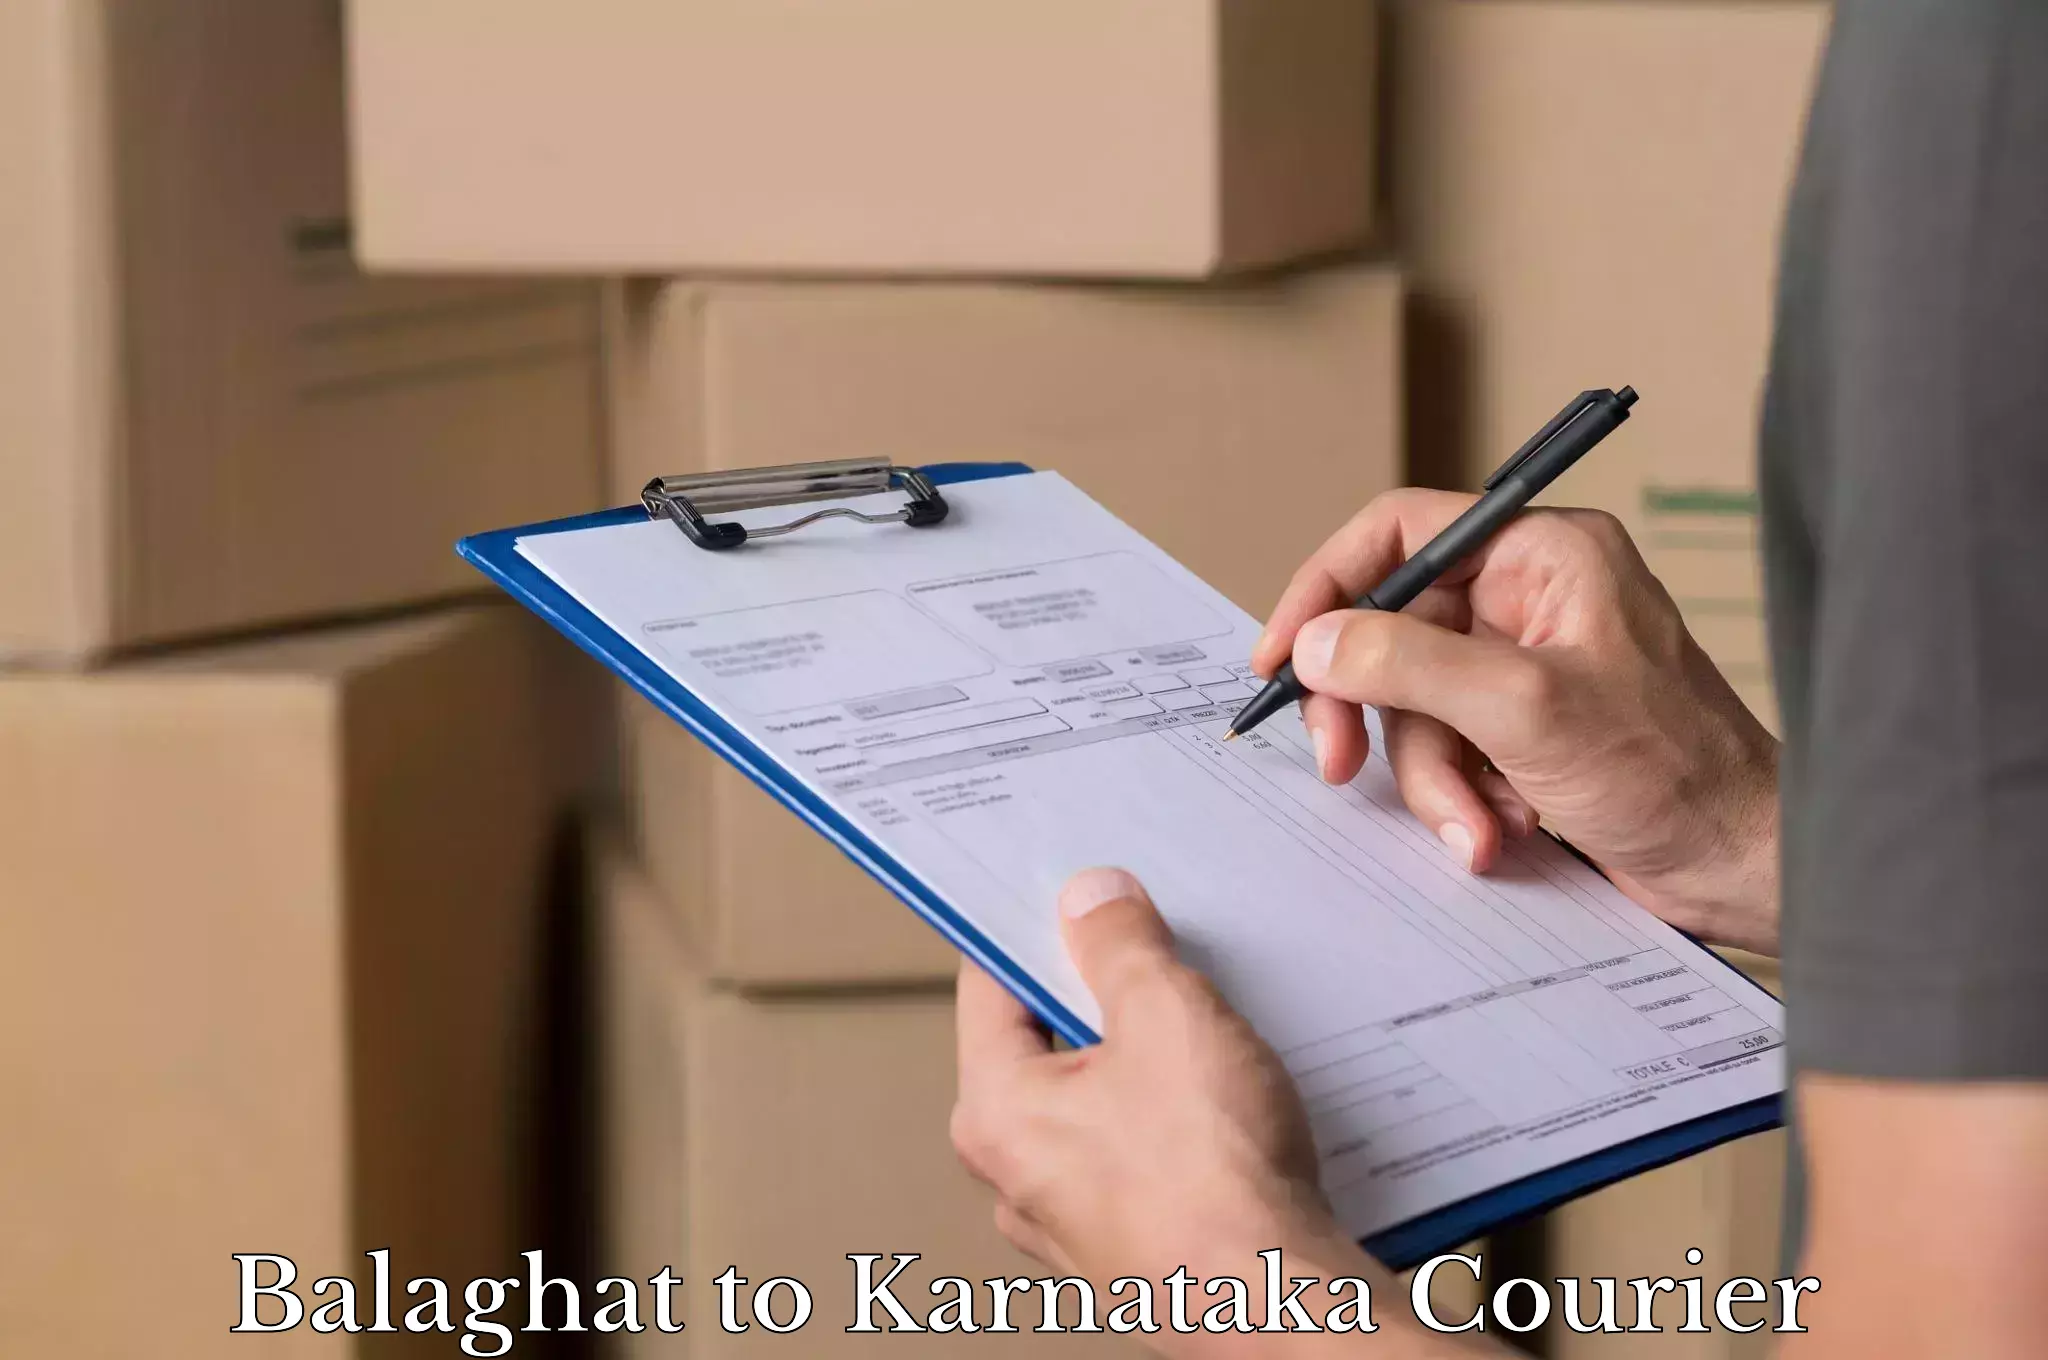 Luggage forwarding service Balaghat to Karnataka